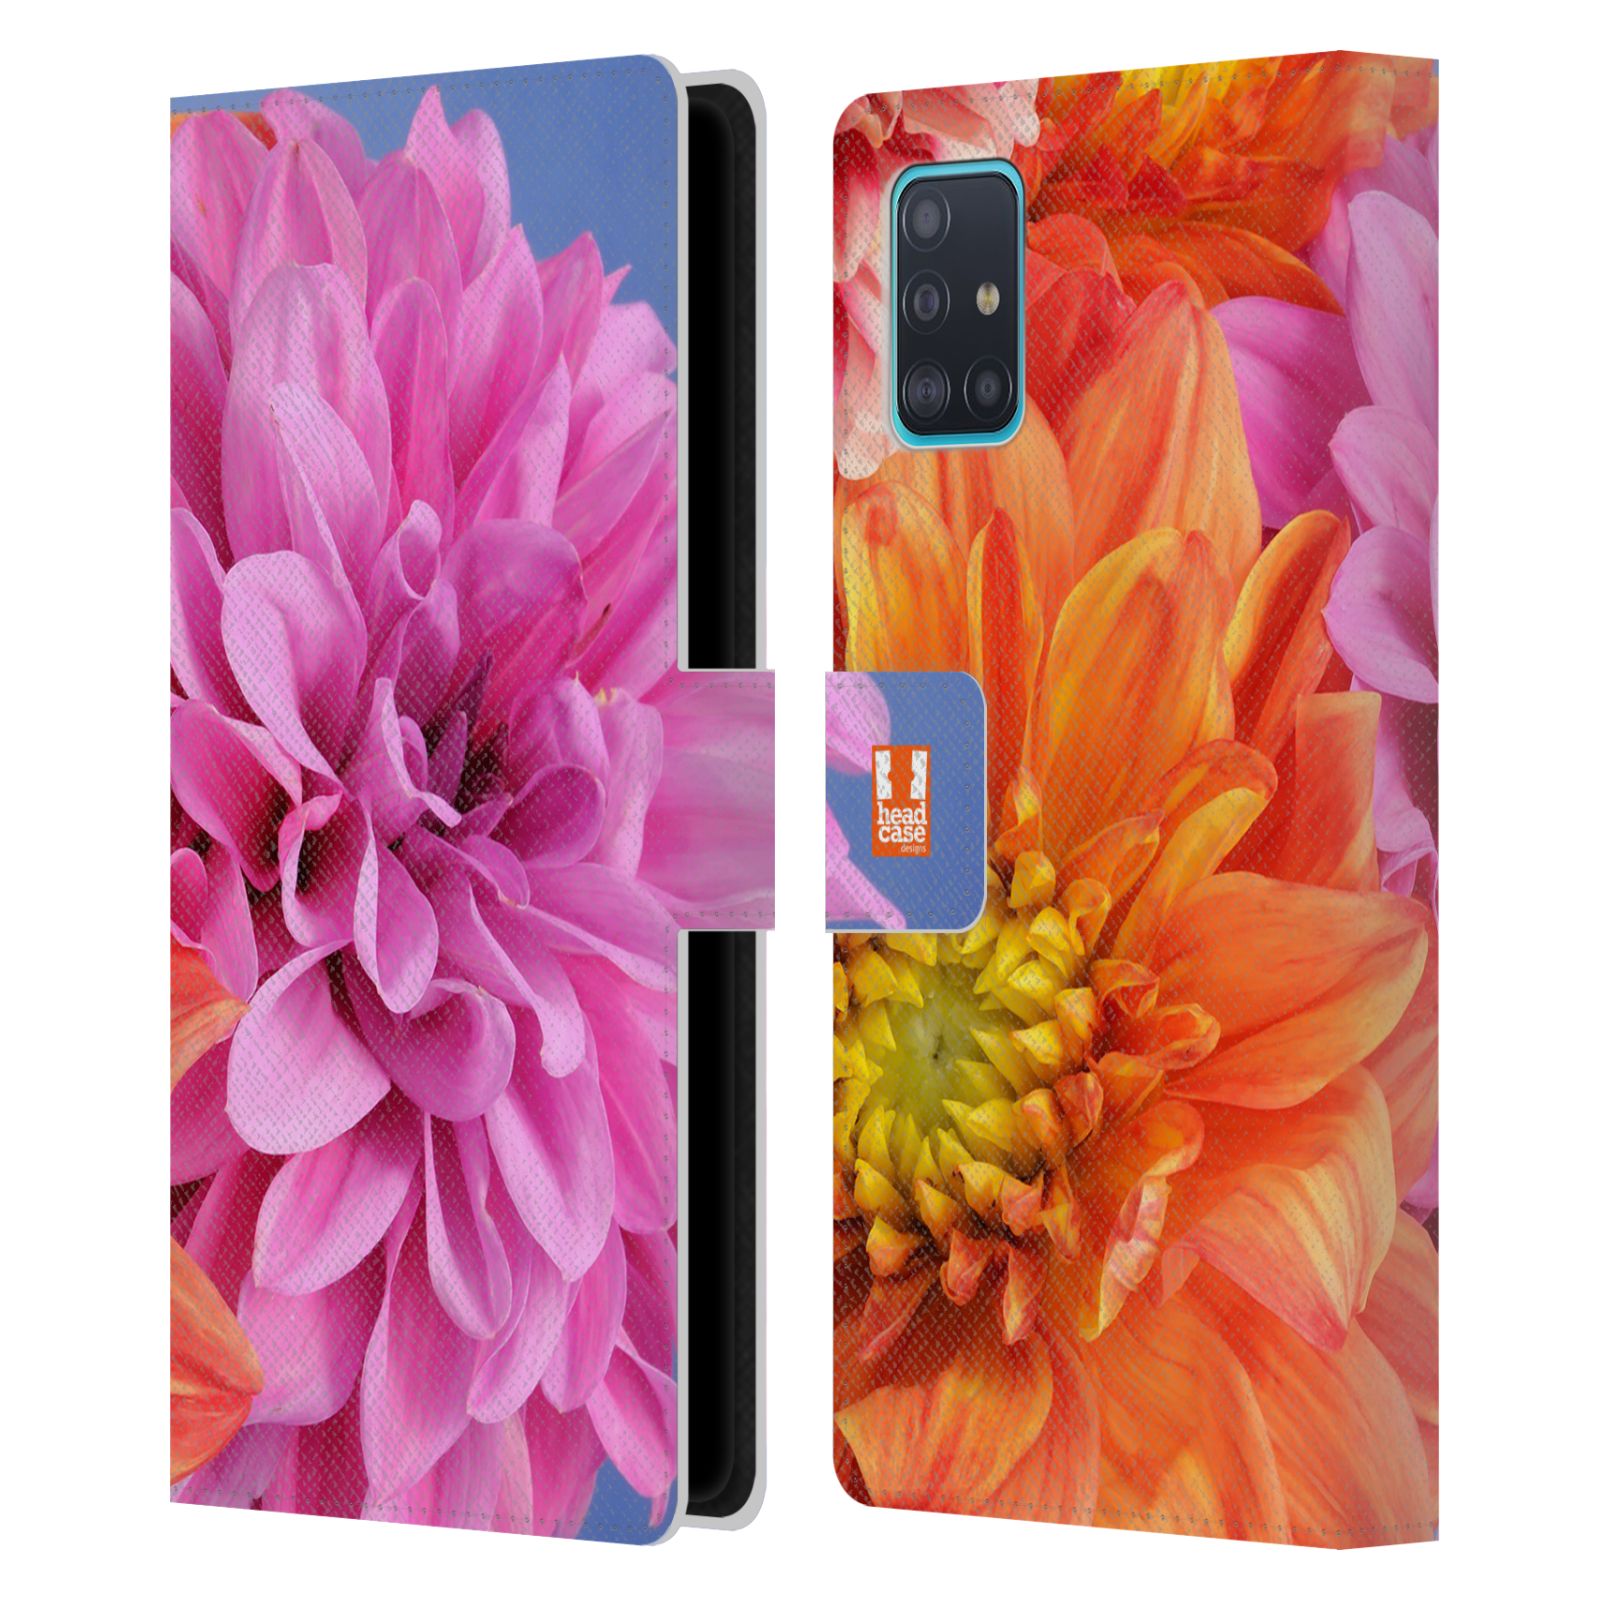 Pouzdro na mobil Samsung Galaxy A51 (A515F) květy foto Jiřinka růžová a oranžová